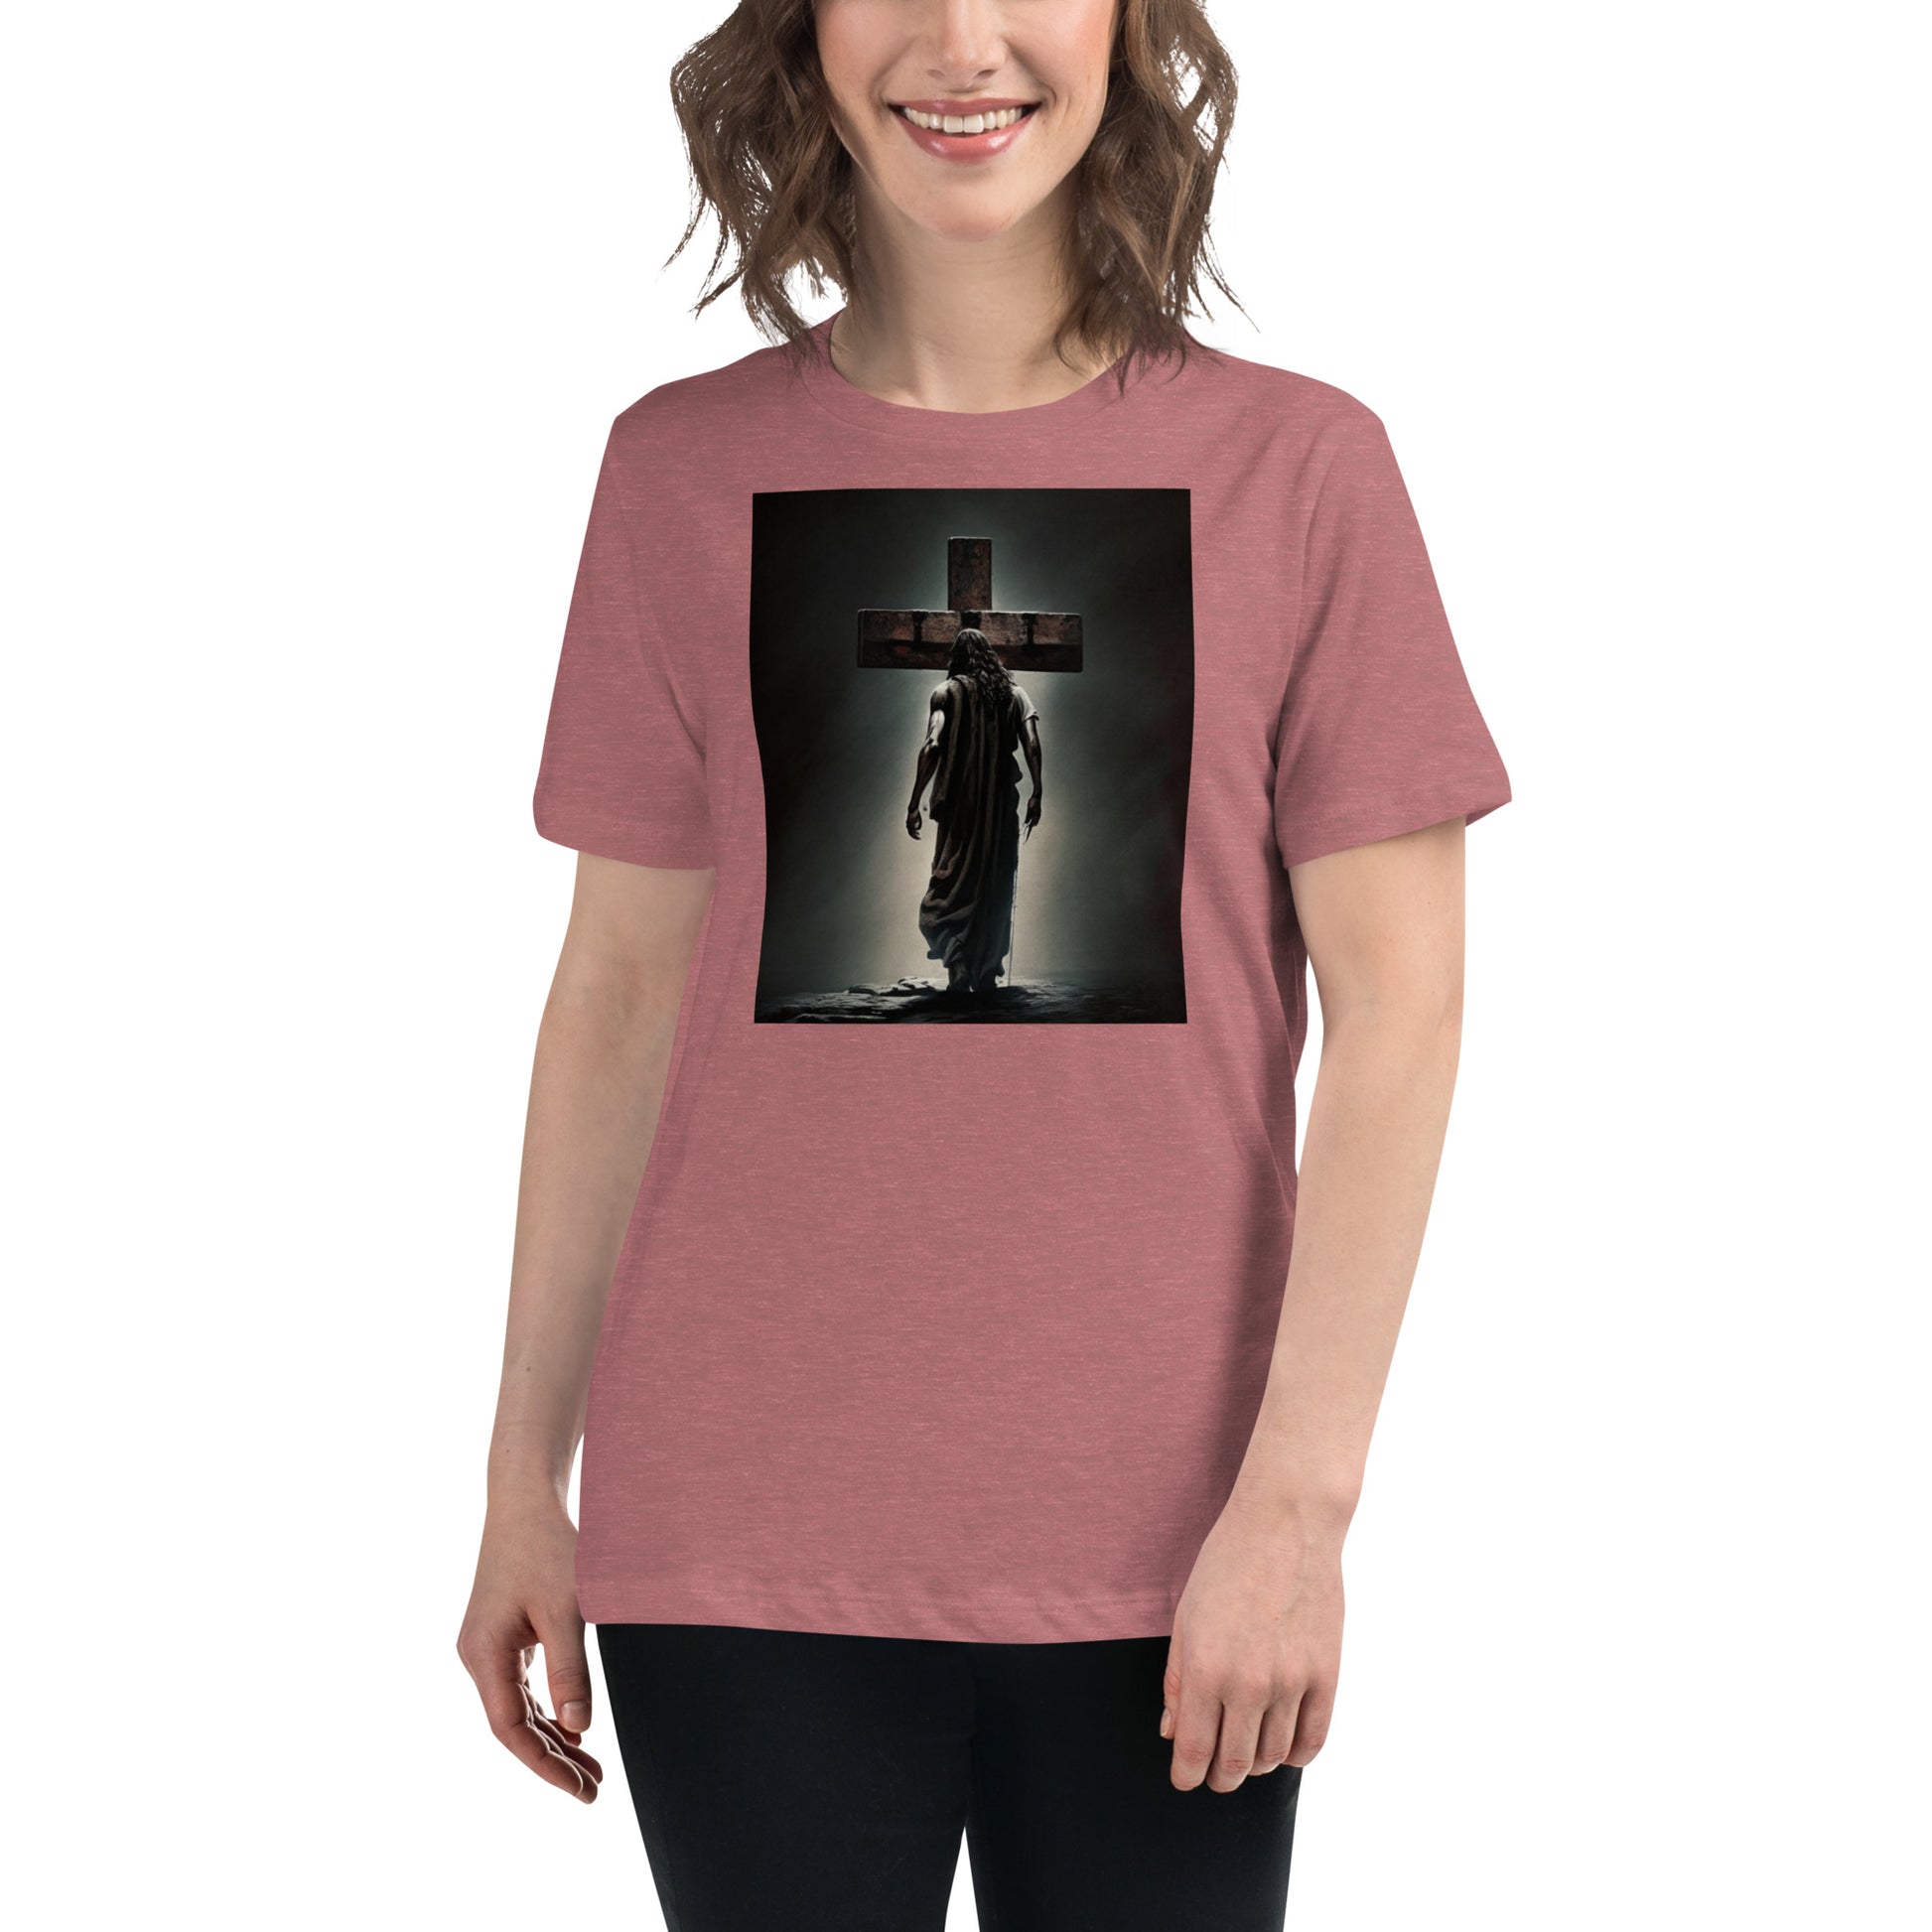 Christ Facing the Cross Christian Women's T-shirt